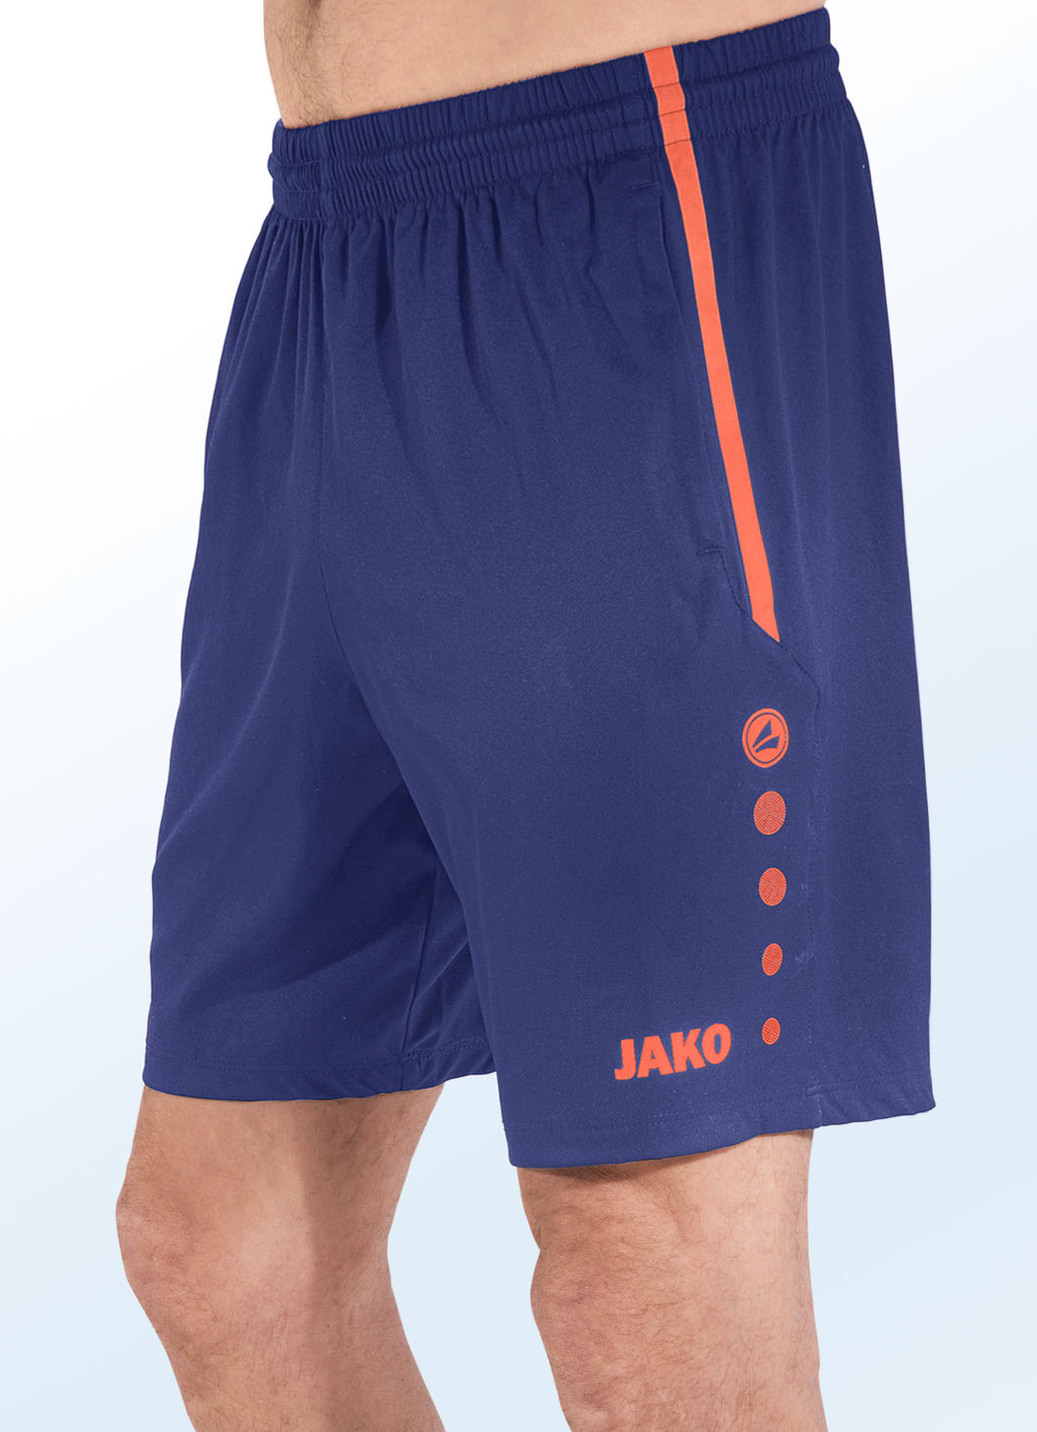 Shorts von "Jako" in 4 Farben, Größe 3XL (58/60), Marine-Orange von Jako